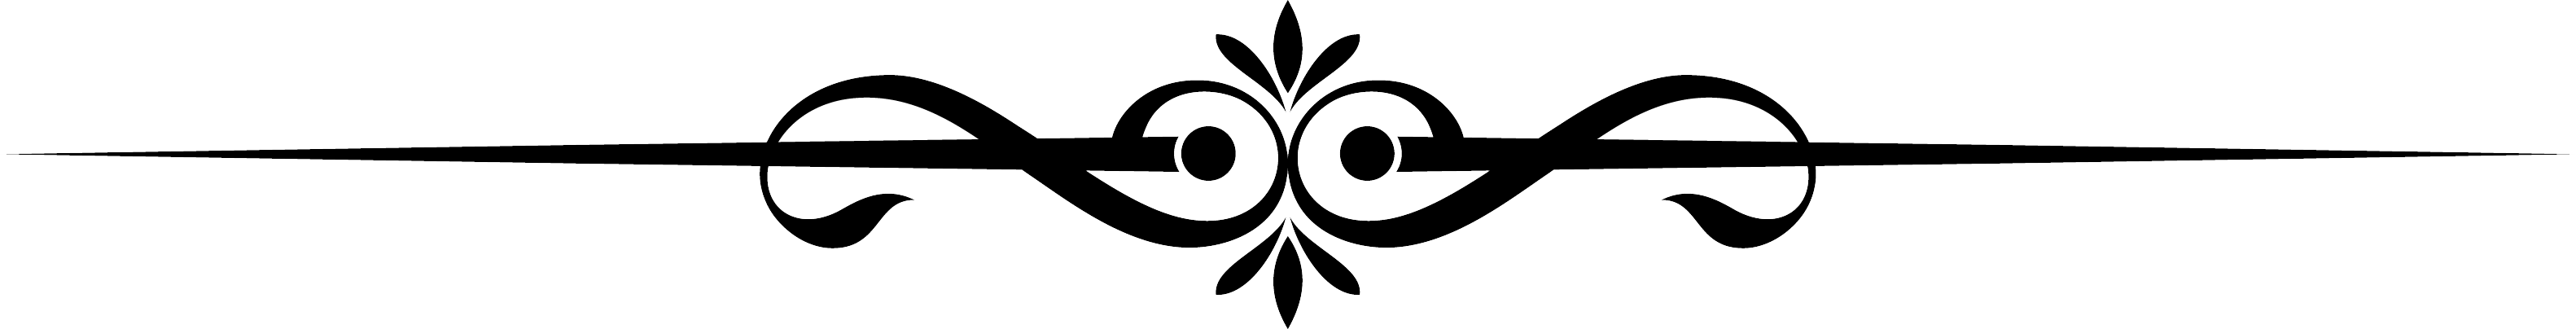 Логотип сервера Lineage 2